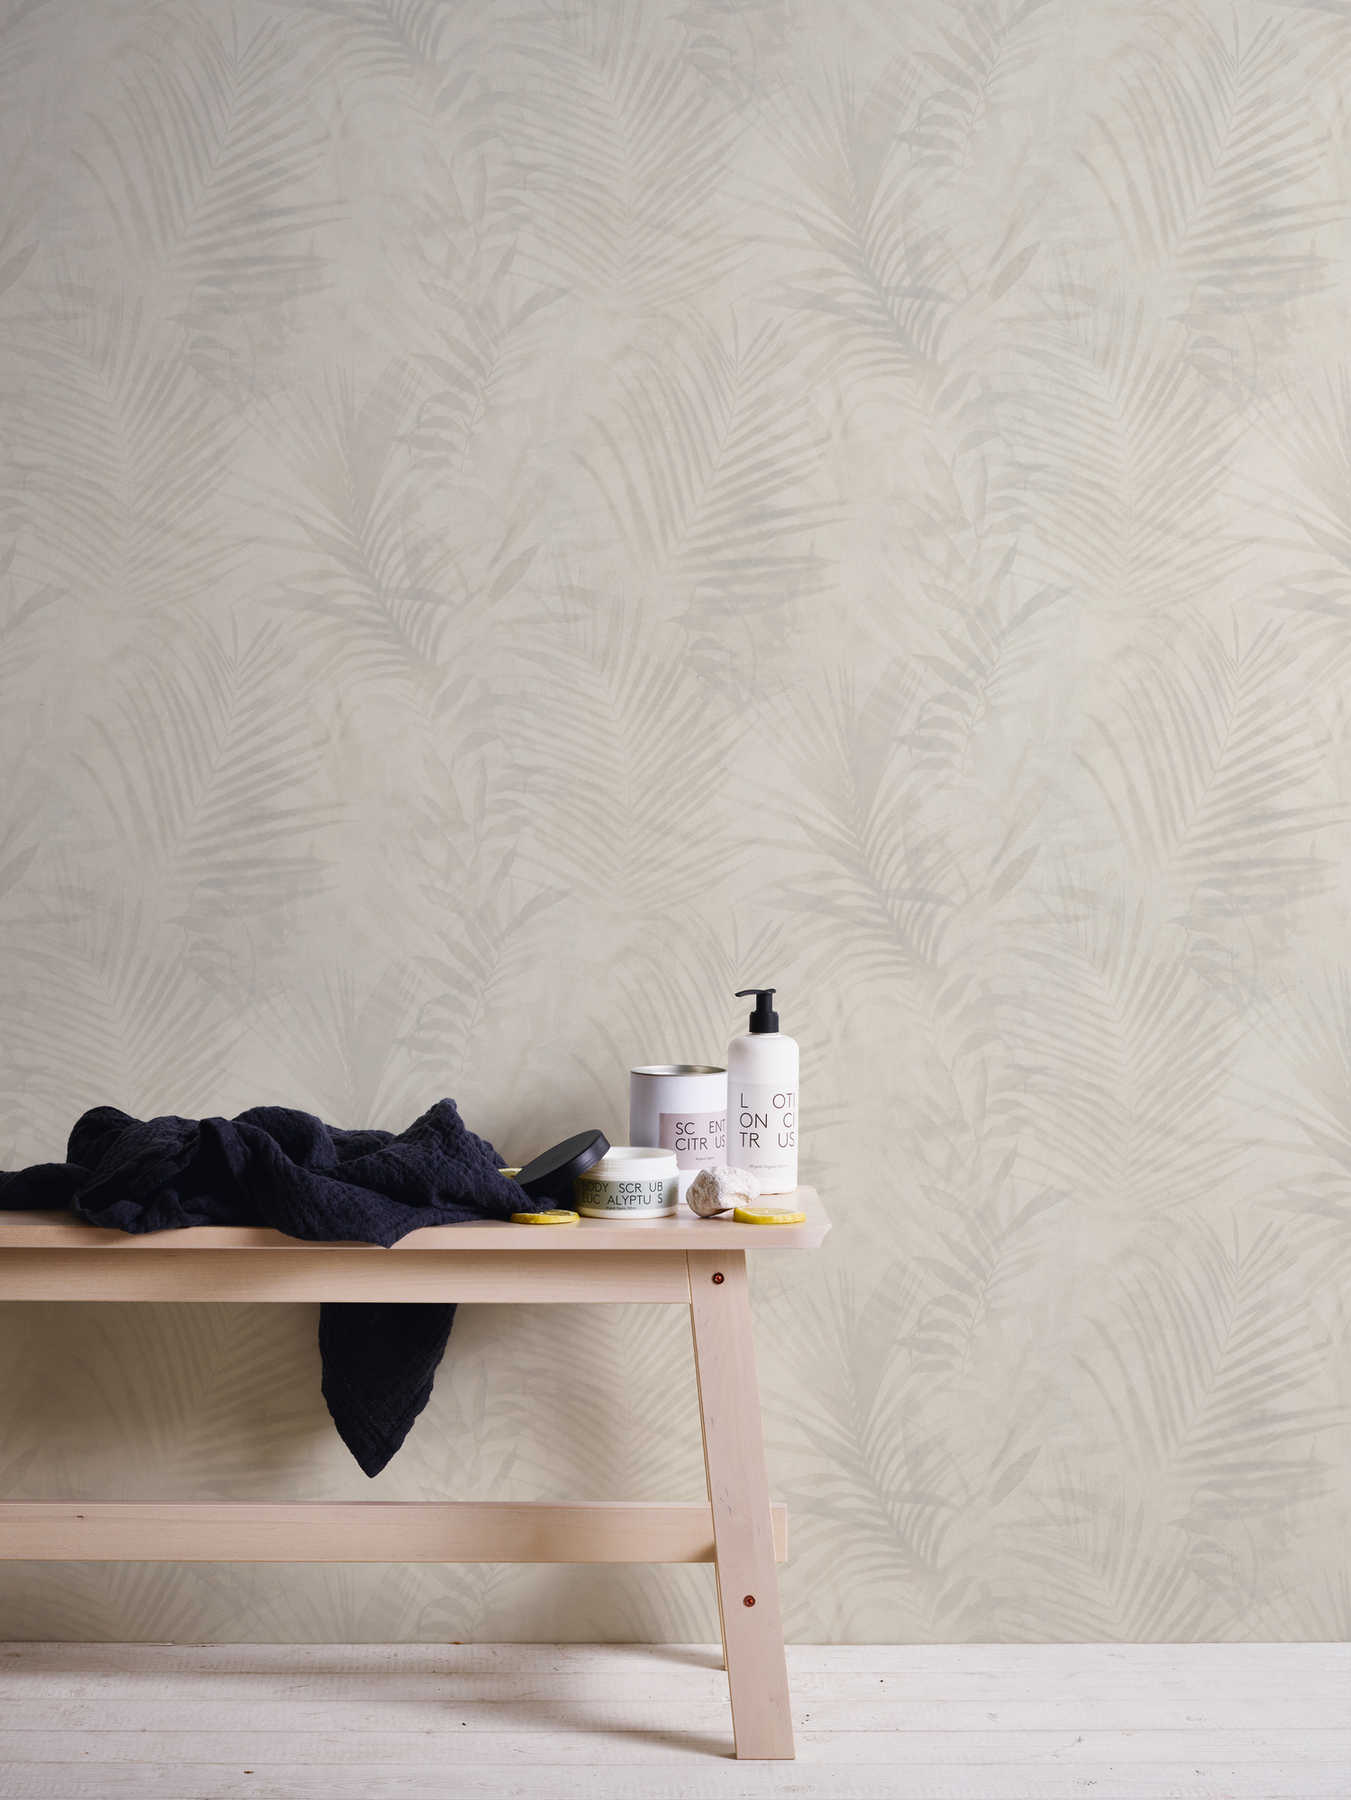             papel pintado con motivos de palmeras en aspecto de lino - beige, crema, gris
        